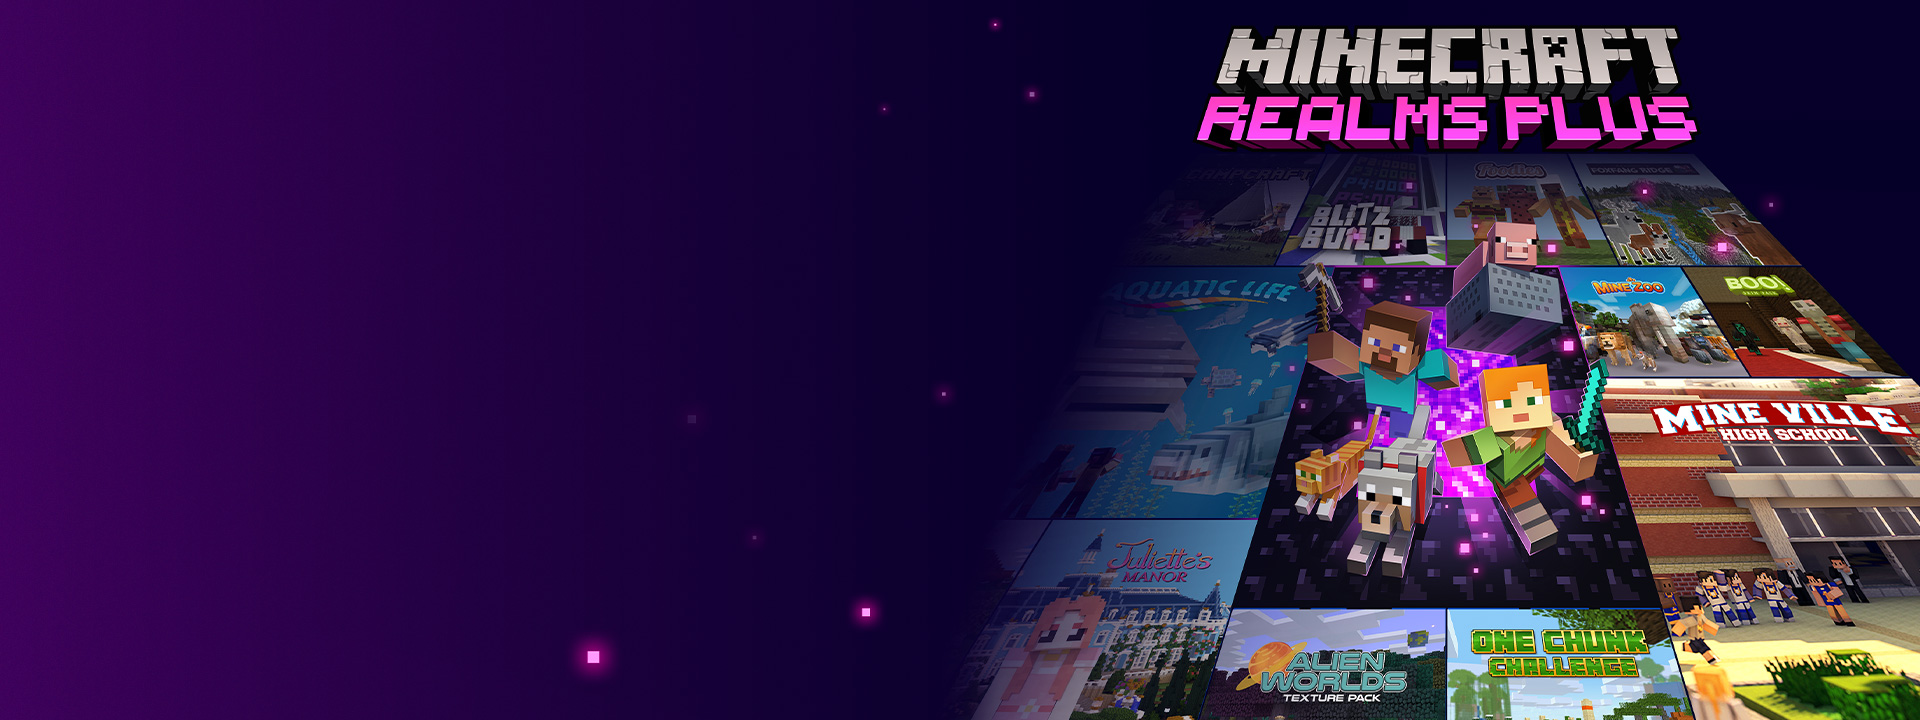 Minecraft Realms Plus, personnages de Minecraft sortant d'un portail du Nether avec d'autres images de boîte de jeu à côté